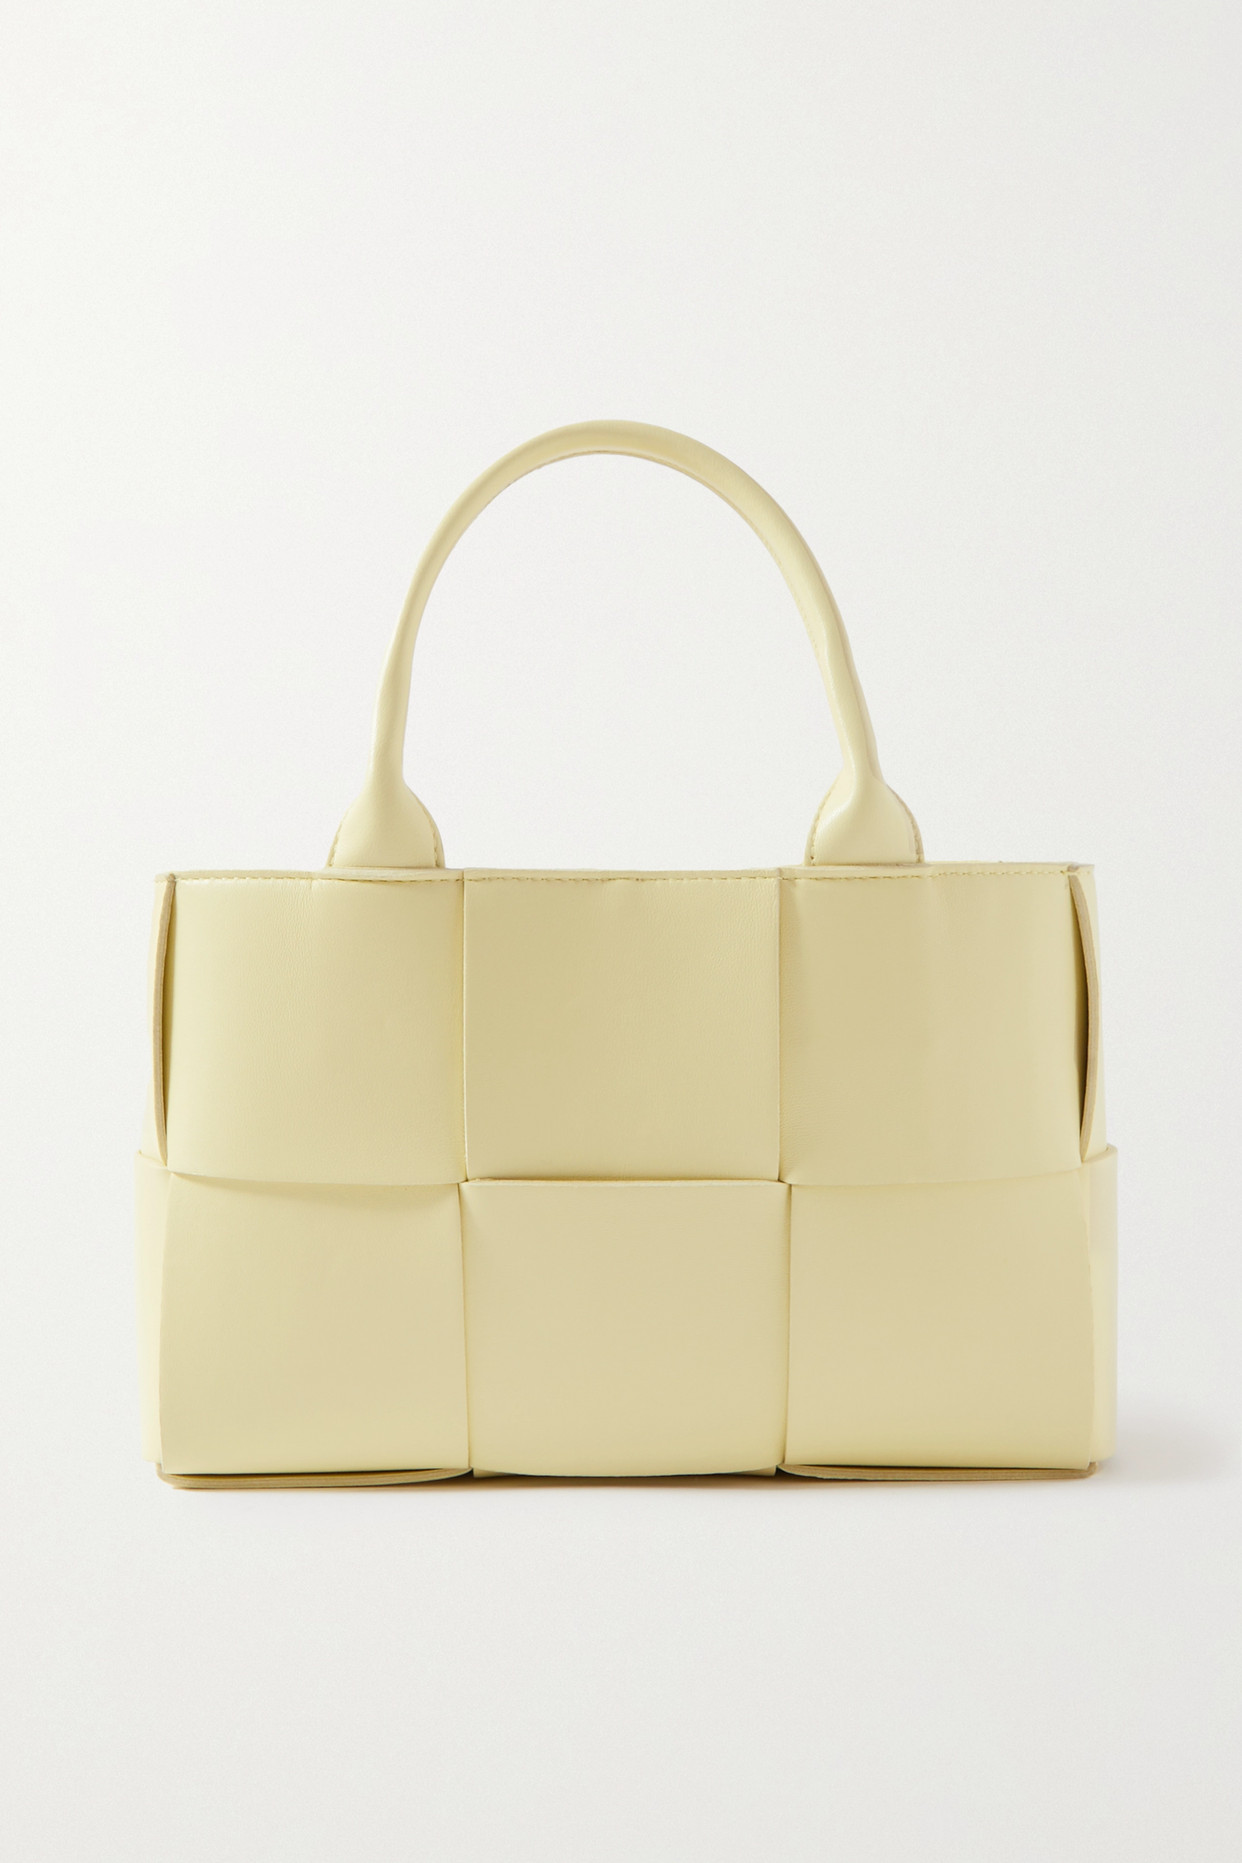 Bottega Veneta - Arco Mini Intrecciato Leather Tote - Pastel yellow - one size